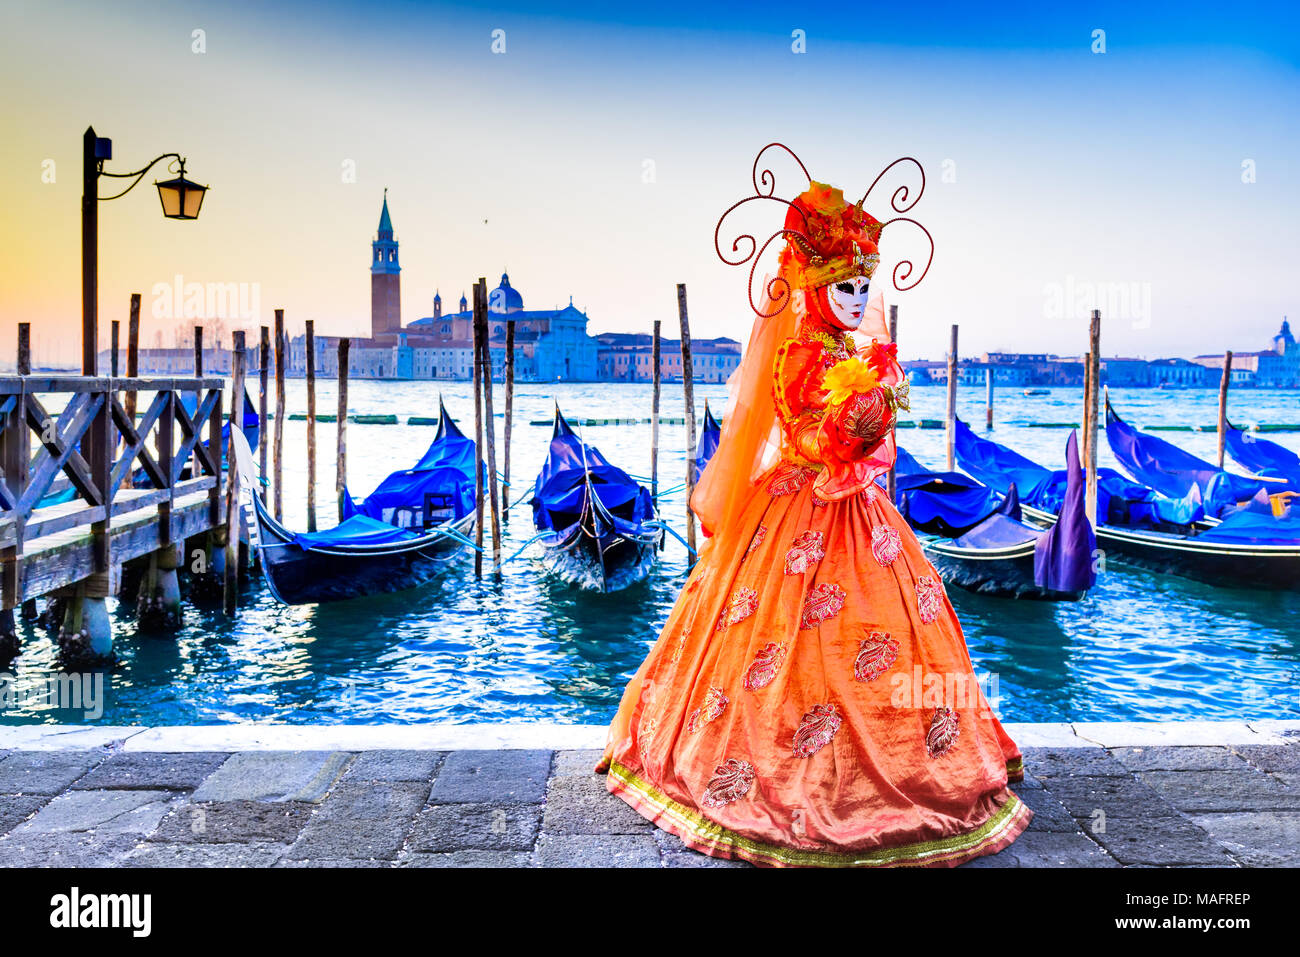 Venedig, Italien - 9. Februar 2018: Karneval in Venedig, wunderschöne Maske an der Piazza San Marco mit Gondeln und Grand Canal. Stockfoto